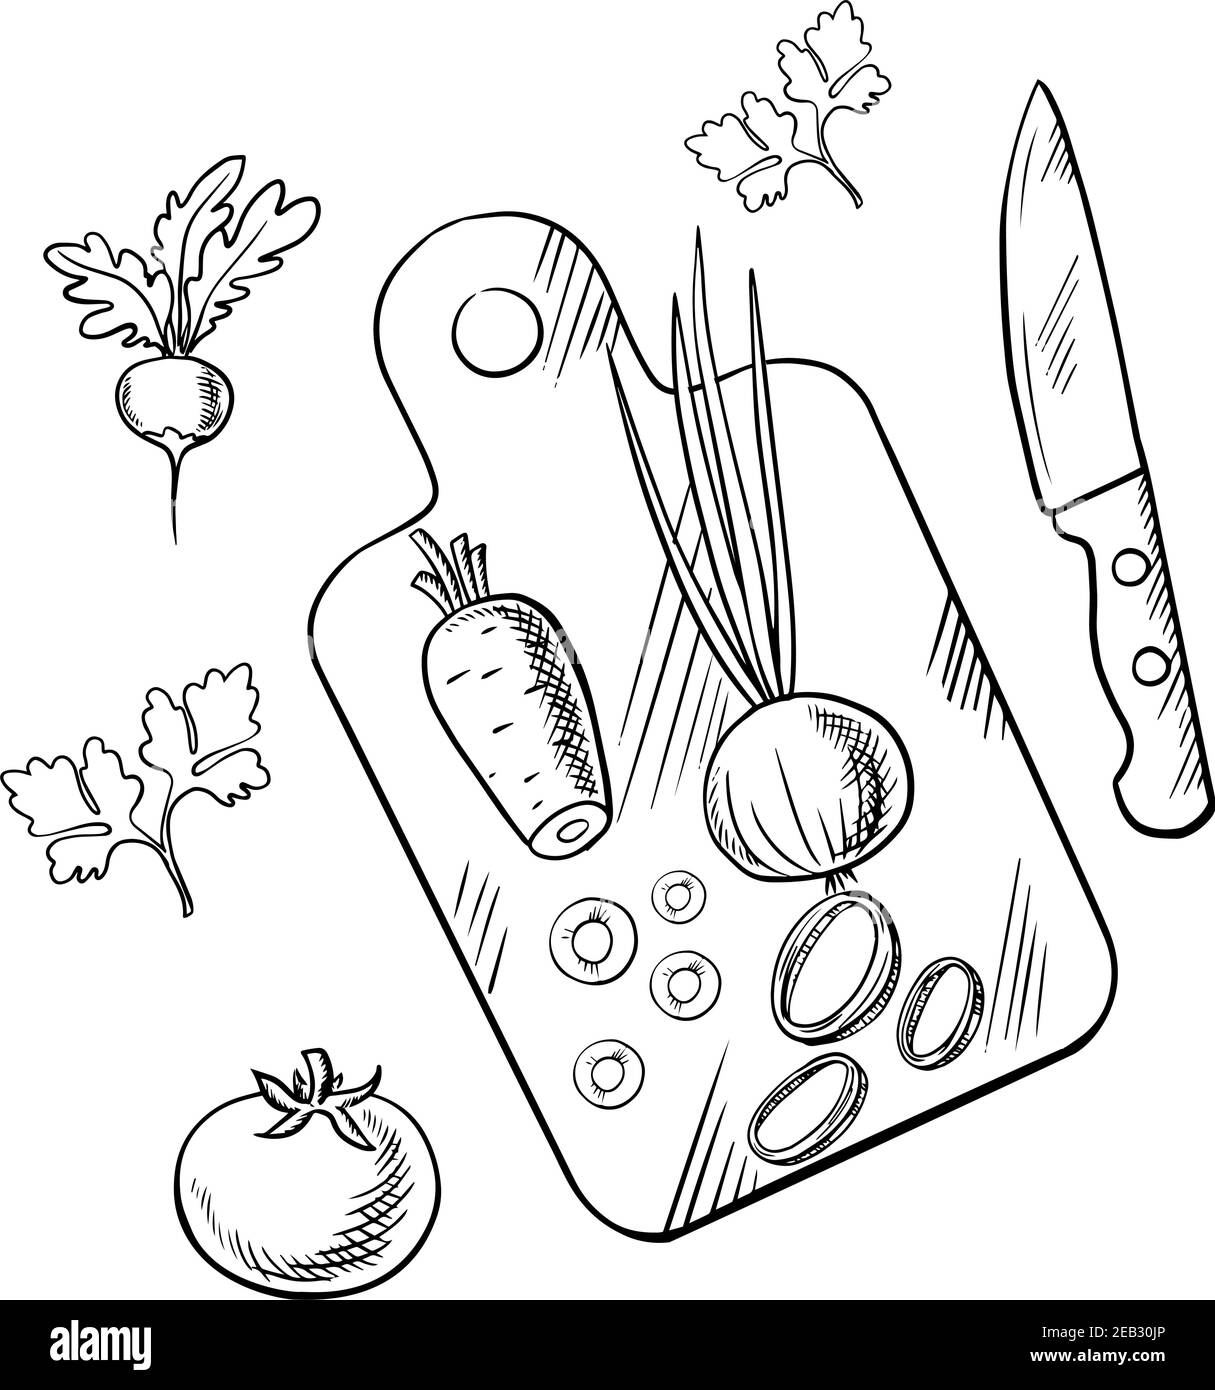 Tomates, carottes, oignons verts et légumes radis frais sur planche à découper avec couteau et tiges de persil. Image d'esquisse du processus de cuisson pour la végétarie Illustration de Vecteur